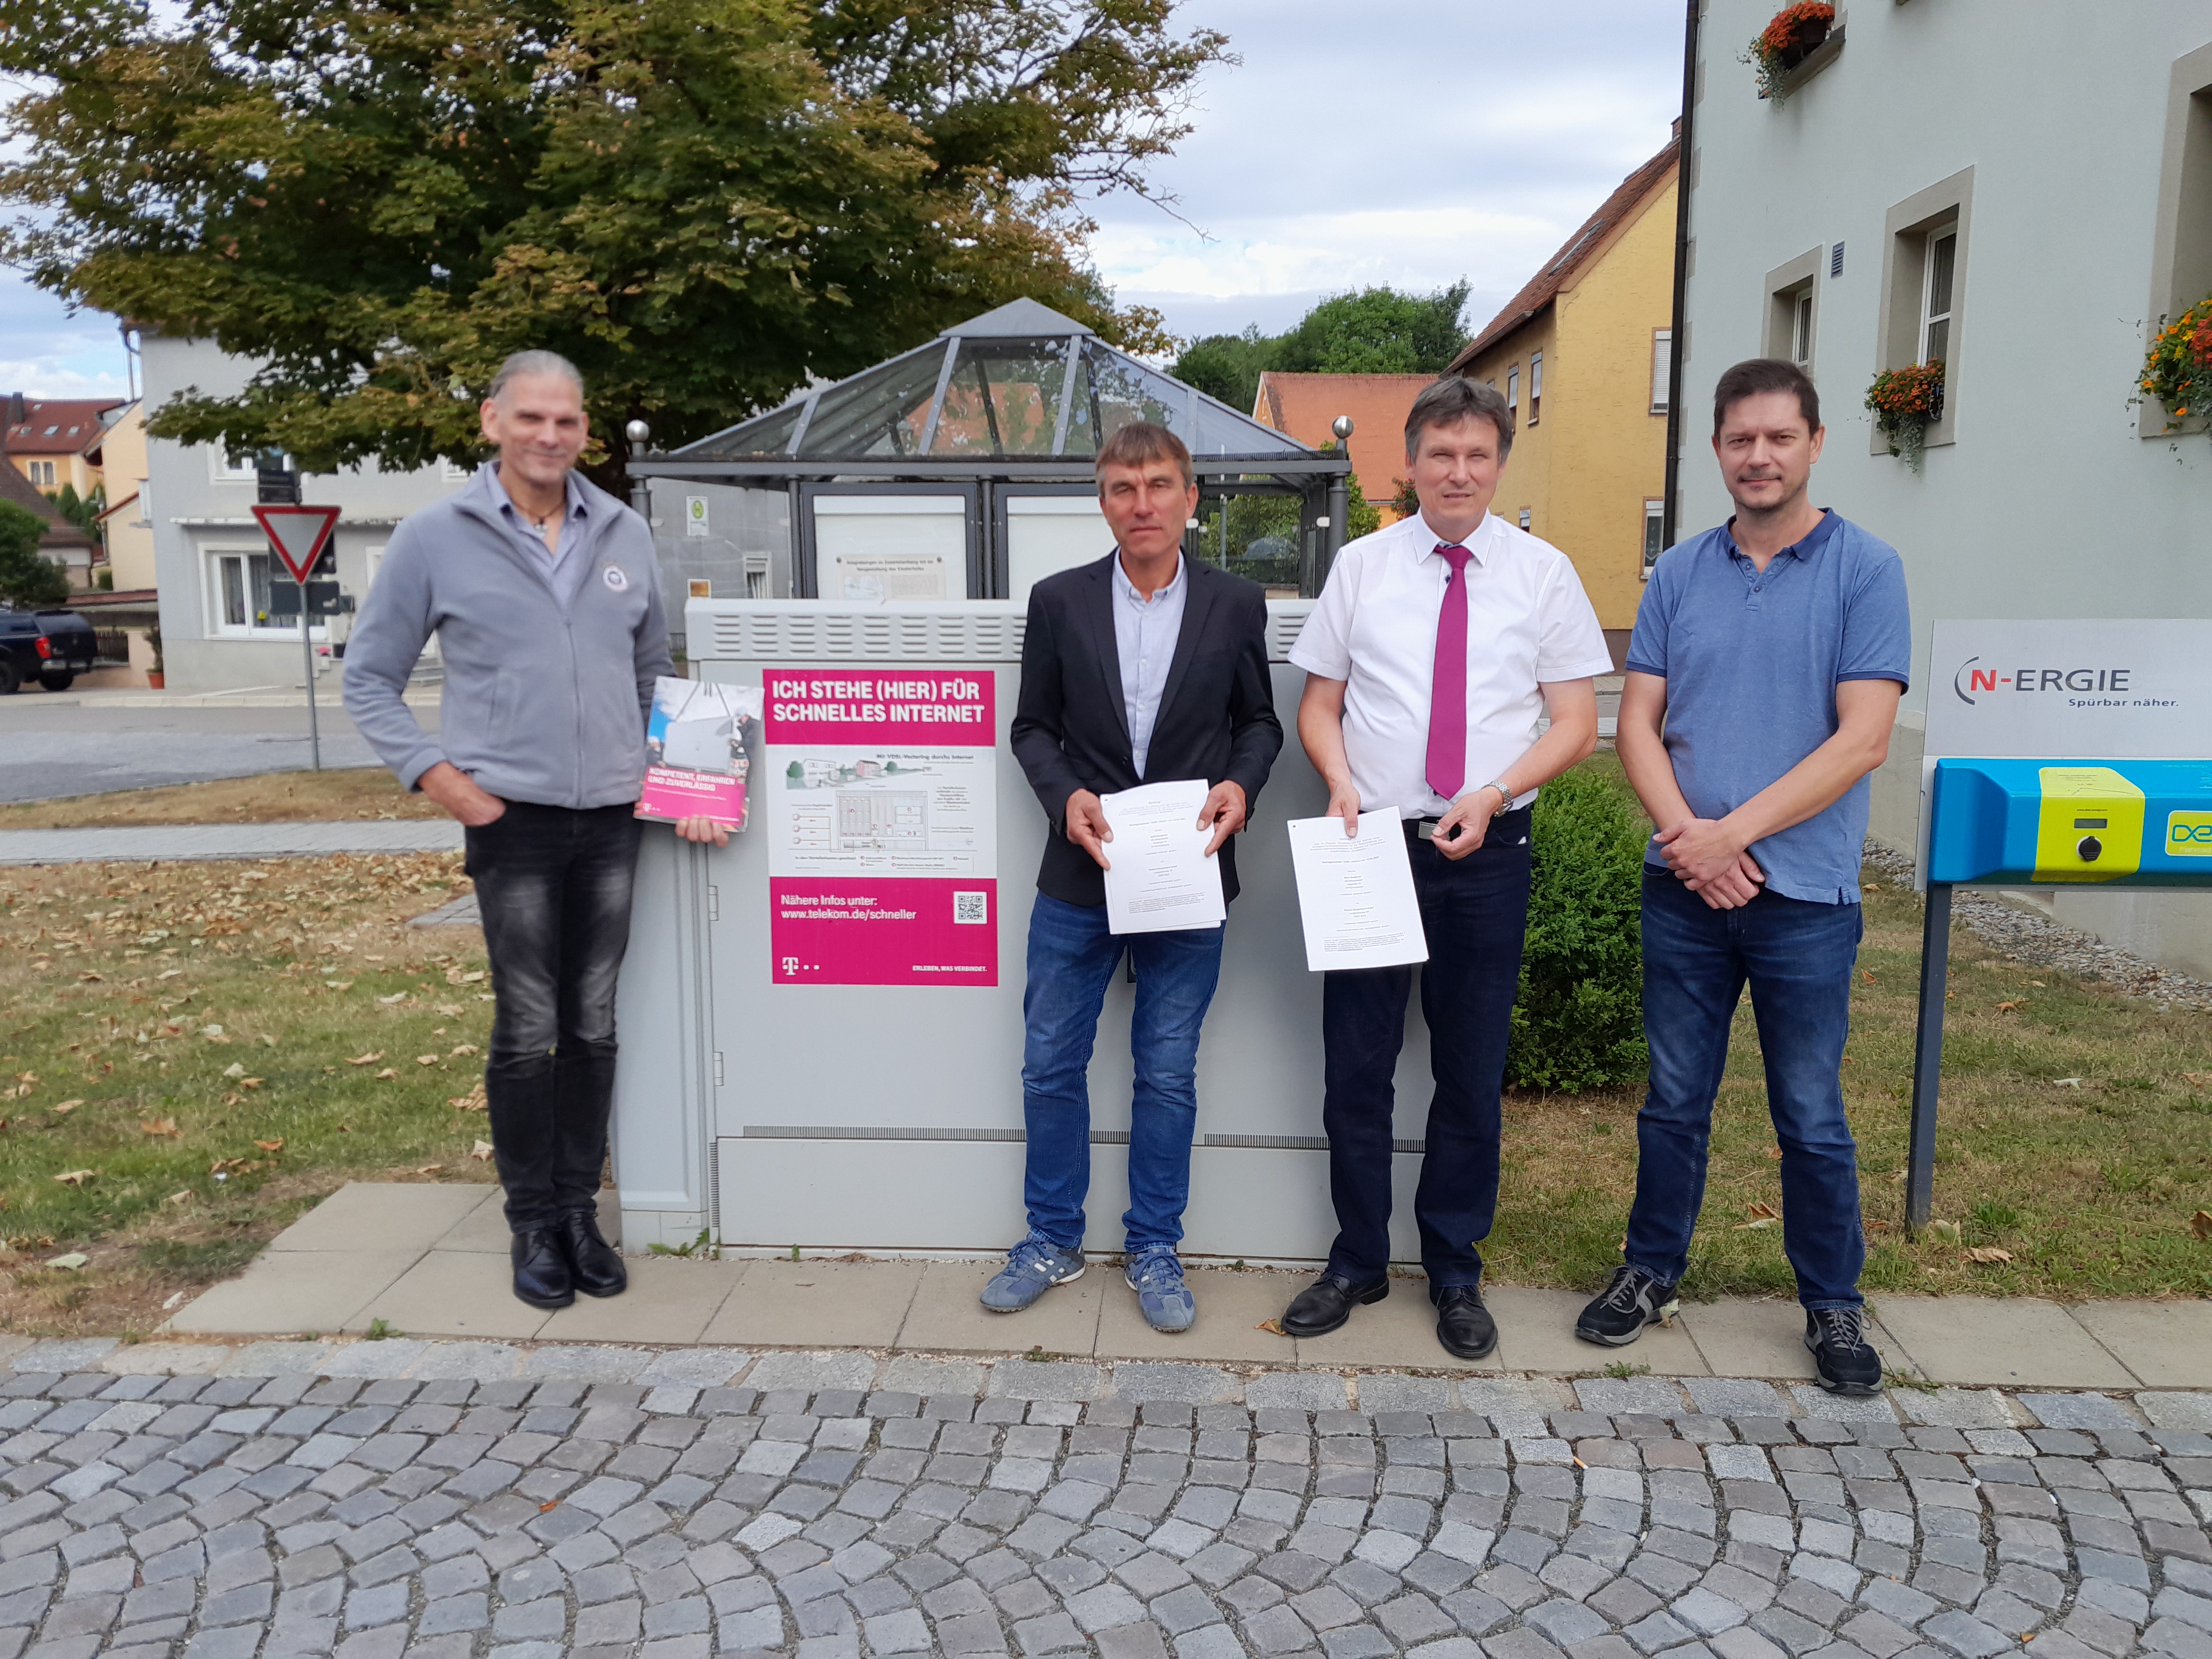 Von links nach rechts: Herr Vollrath (Telekom) 1. Bgm. Pawlicki (Markt Gnotzheim), Herr Sand (Telekom), Herr Liesenfeld (Breitbandpate - VG Hahnenkamm)